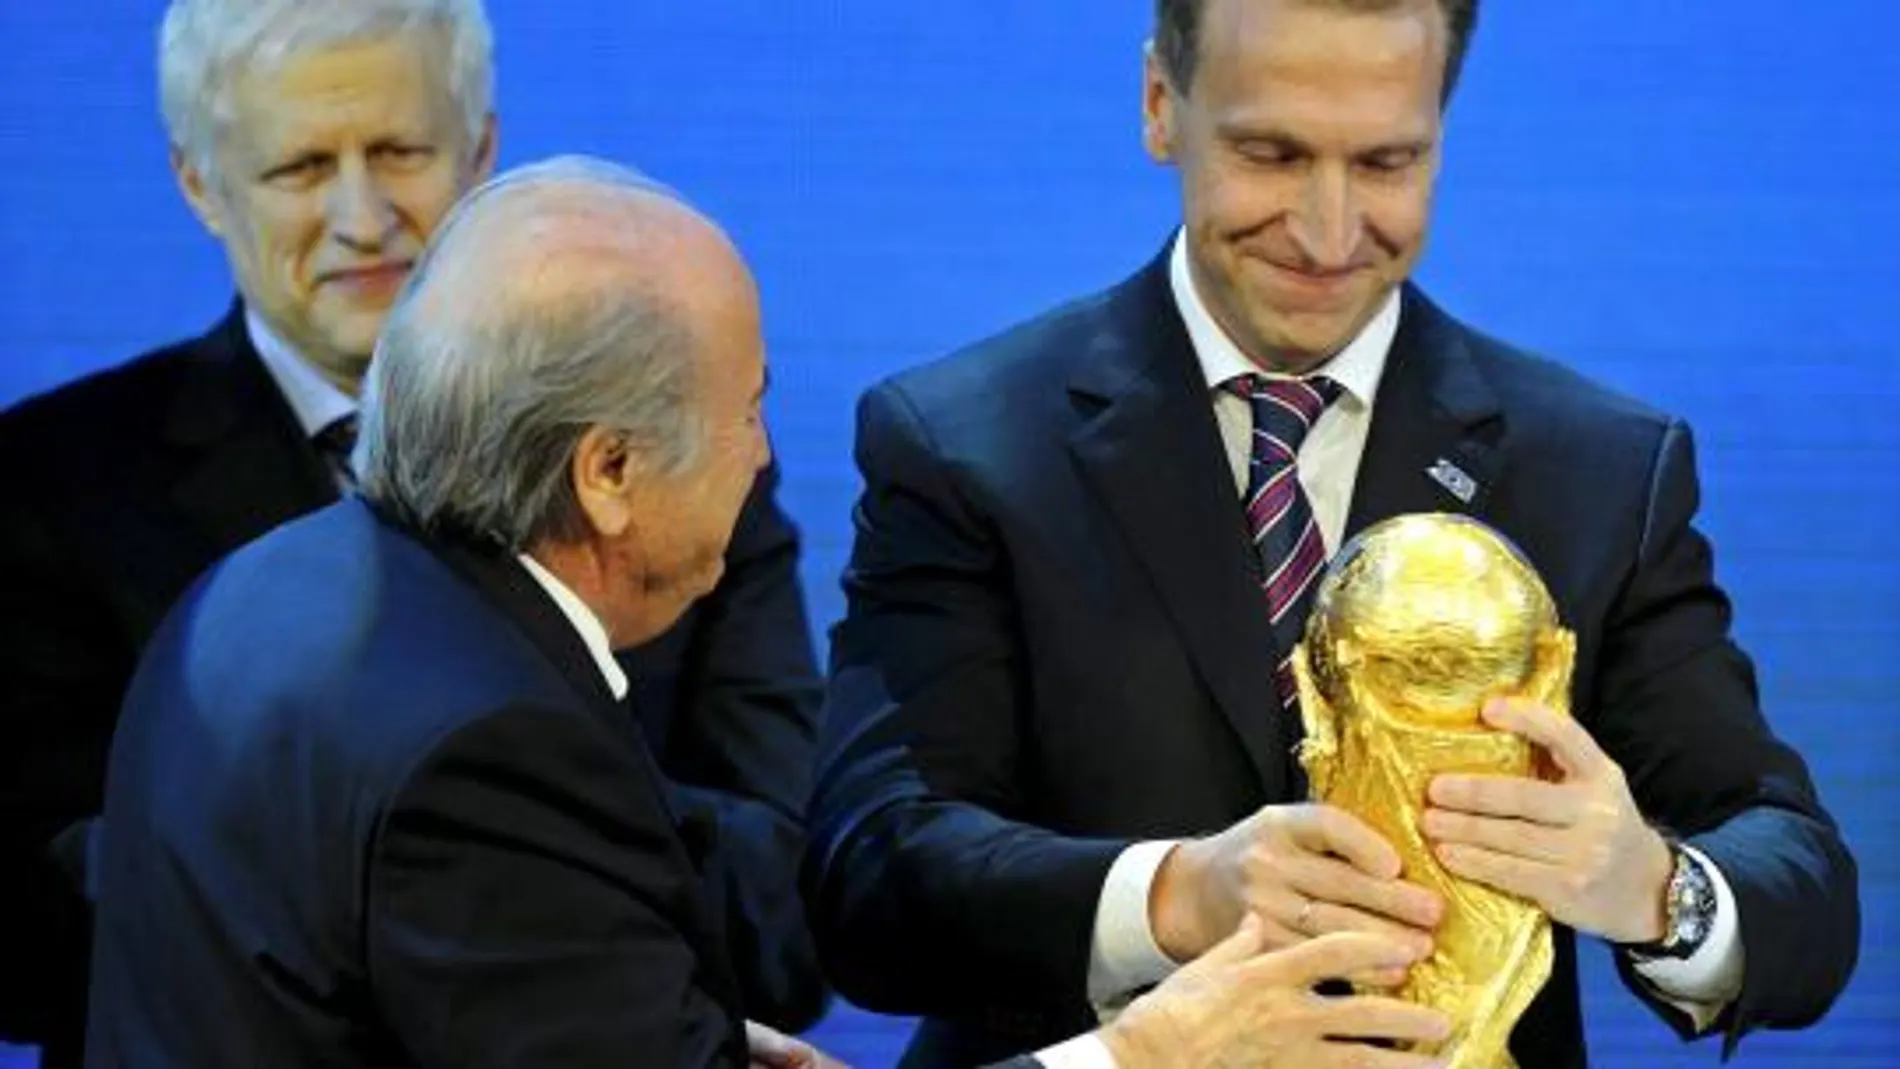 El presidente de la FIFA Joseph S. Blatter cede la Copa del Mundo al vicepresidente primero de Rusia Igor Shuvalov tras serle otorgada a Rusia la organización del Mundial de Fútbol 2018.